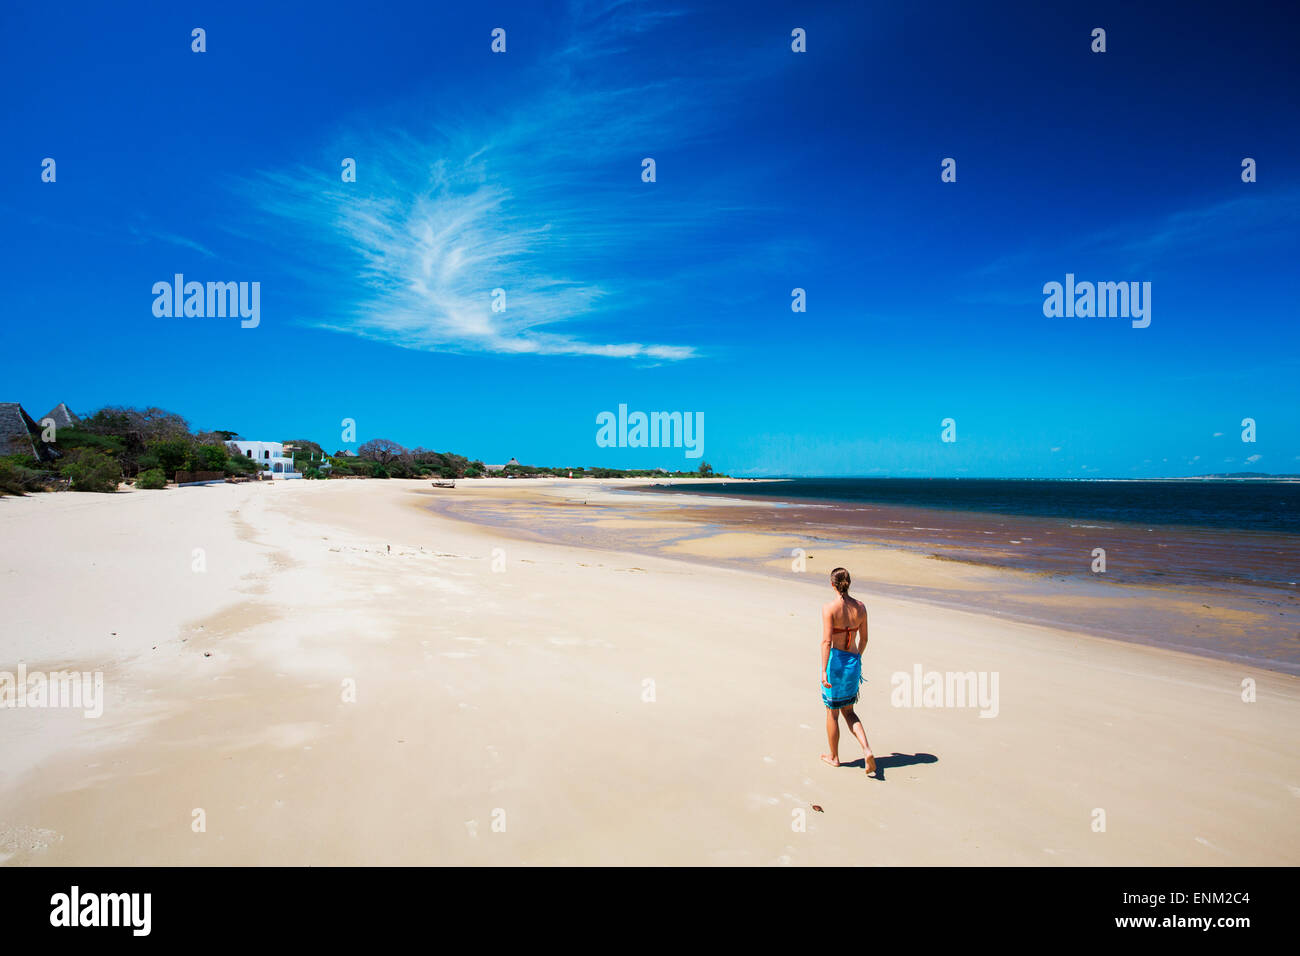 L'ÎLE DE MANDA, Lamu, l'OCÉAN INDIEN, le KENYA, l'Afrique. Une jeune femme marche dans une plage blanche vide sous ciel bleu. Banque D'Images